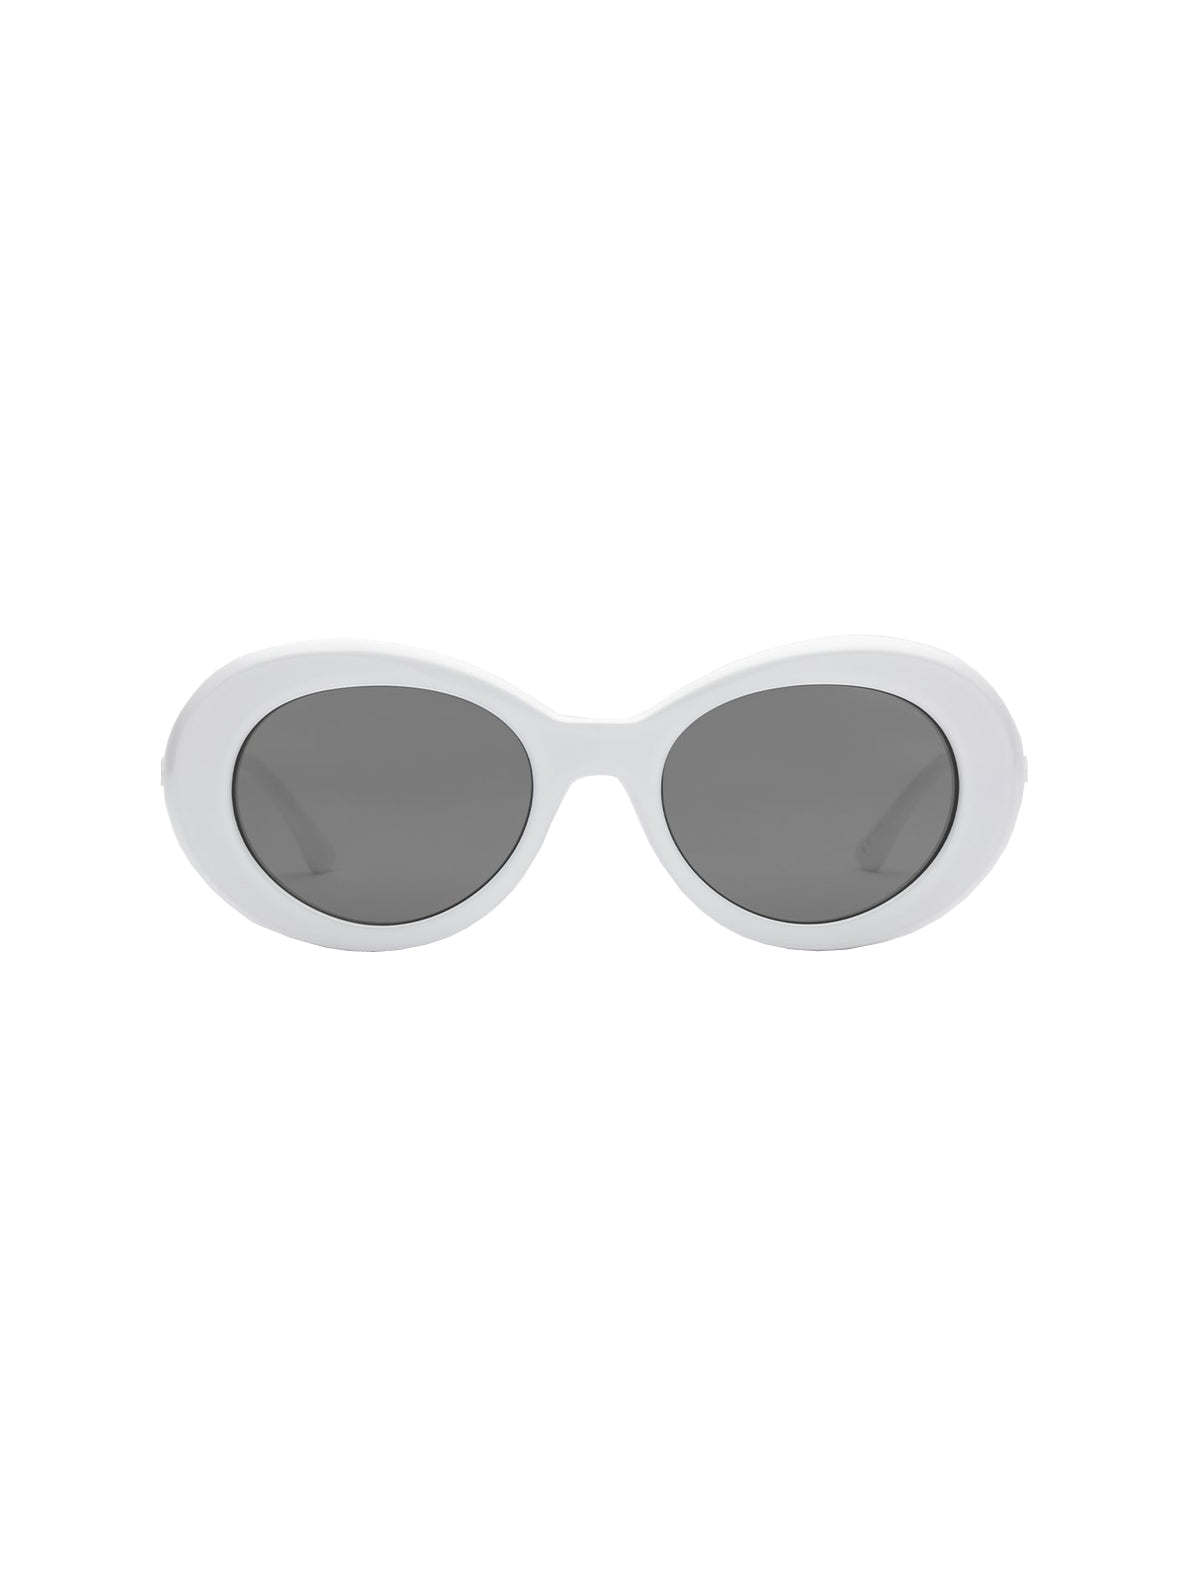 Volcom Stoned Sunglasses GlossWhite GraySilverFlash